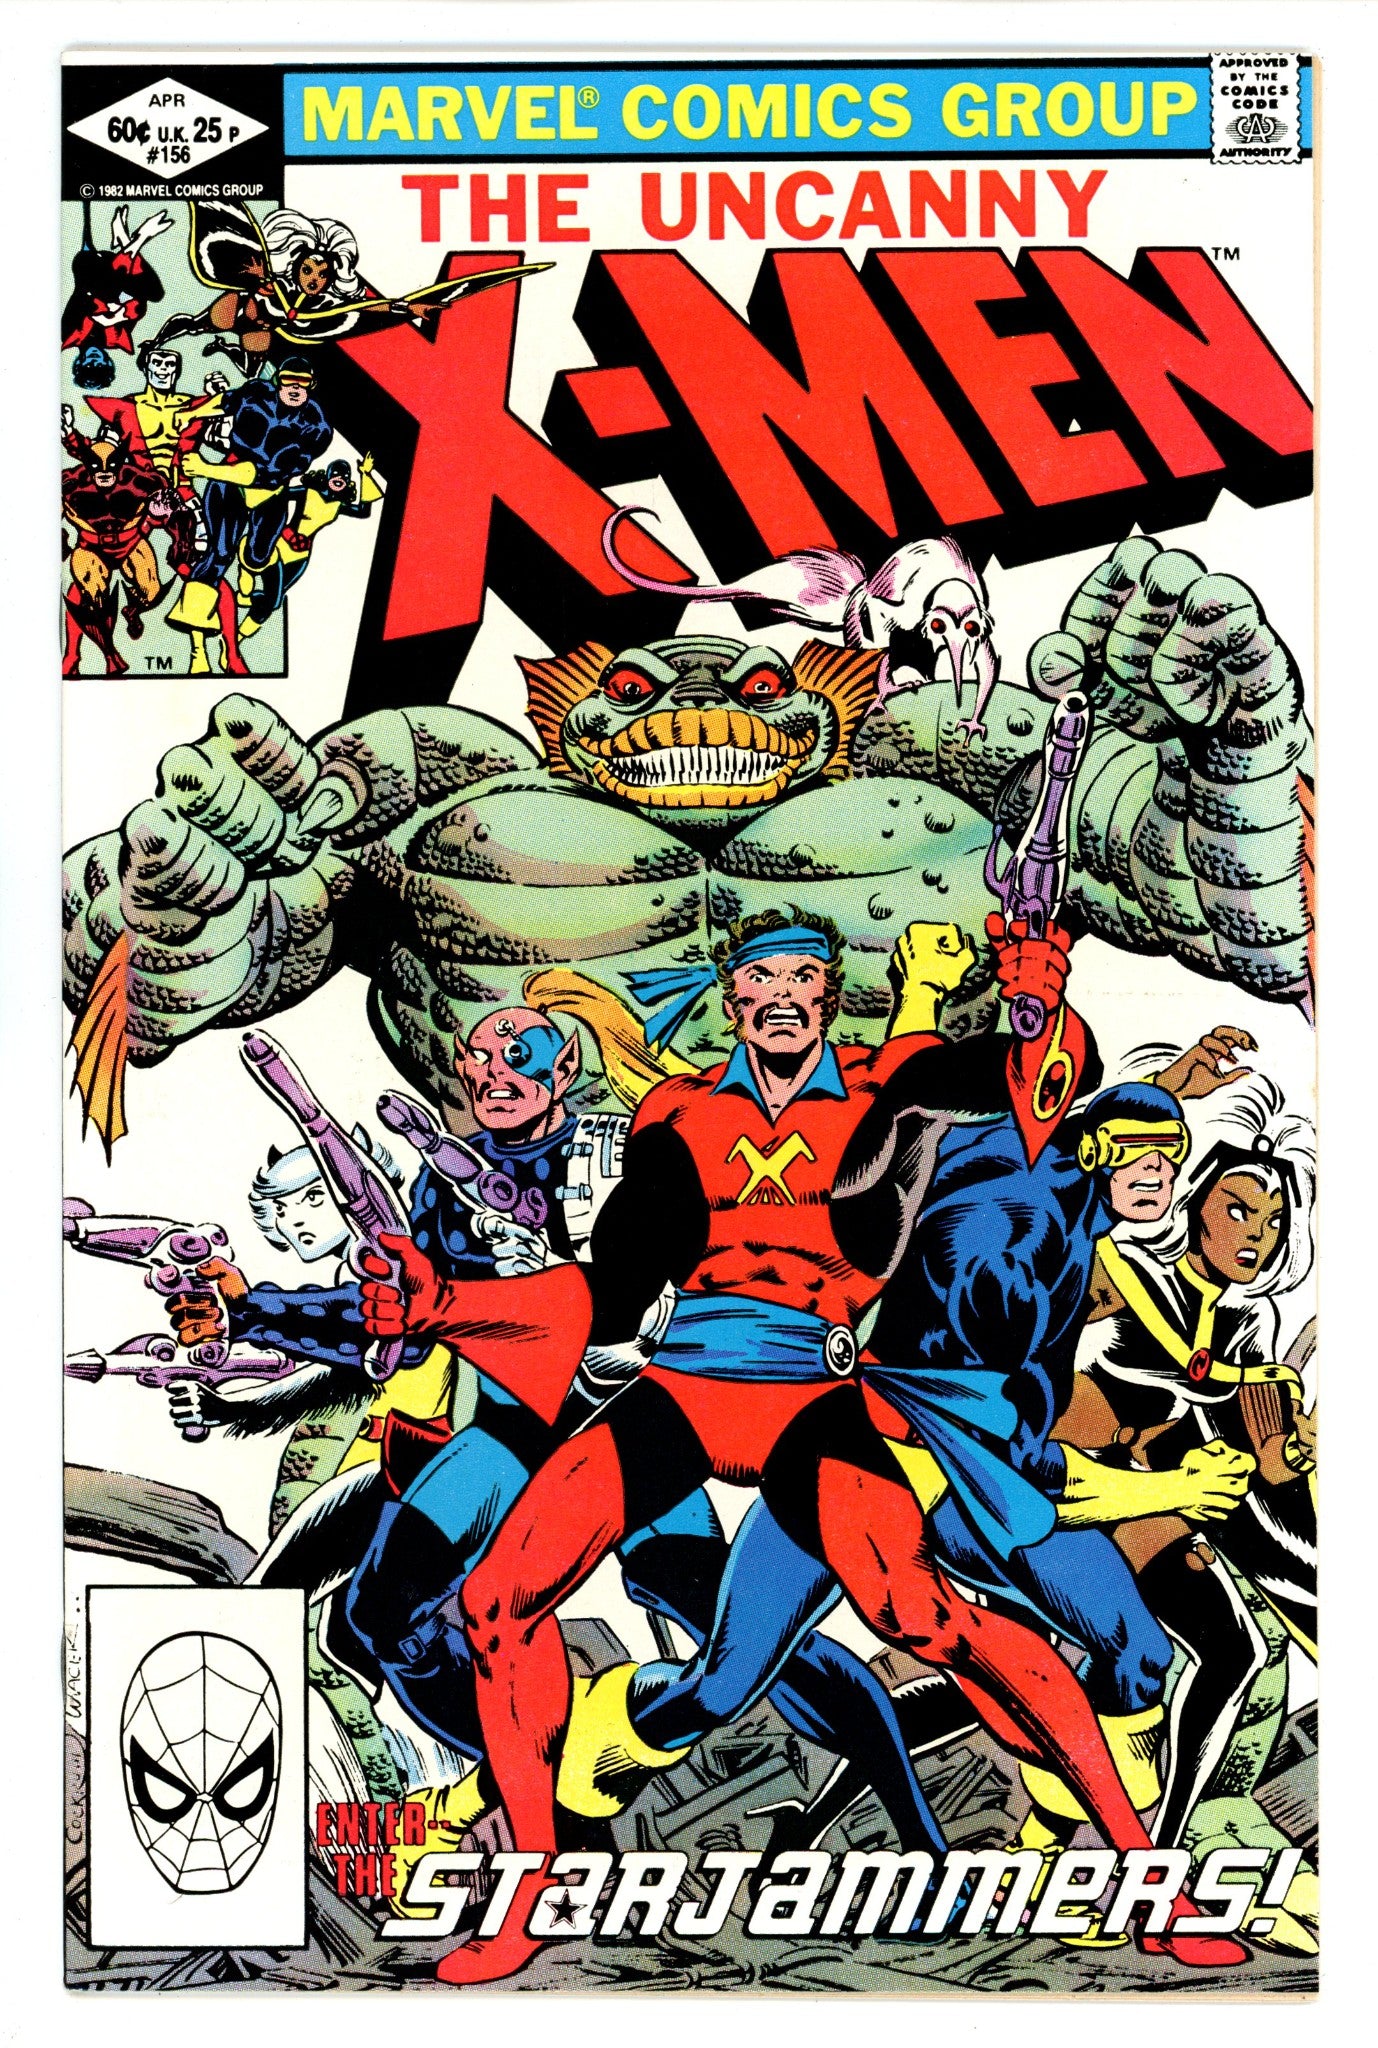 The Uncanny X-Men Vol 1 156 VF+ (8.5) (1982) 